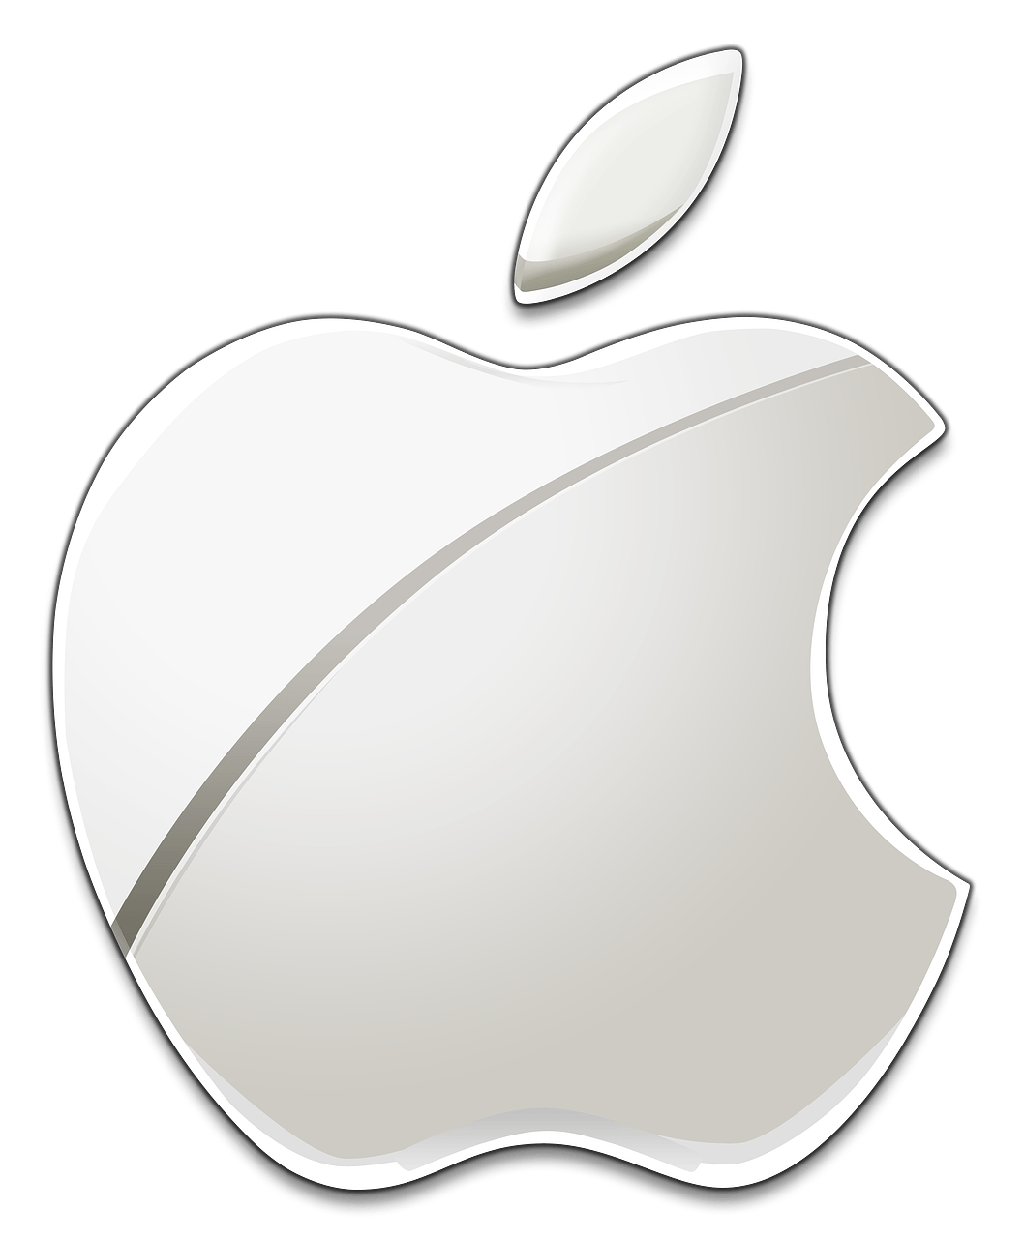 Current Apple Logo - Apple logo PNG images free download